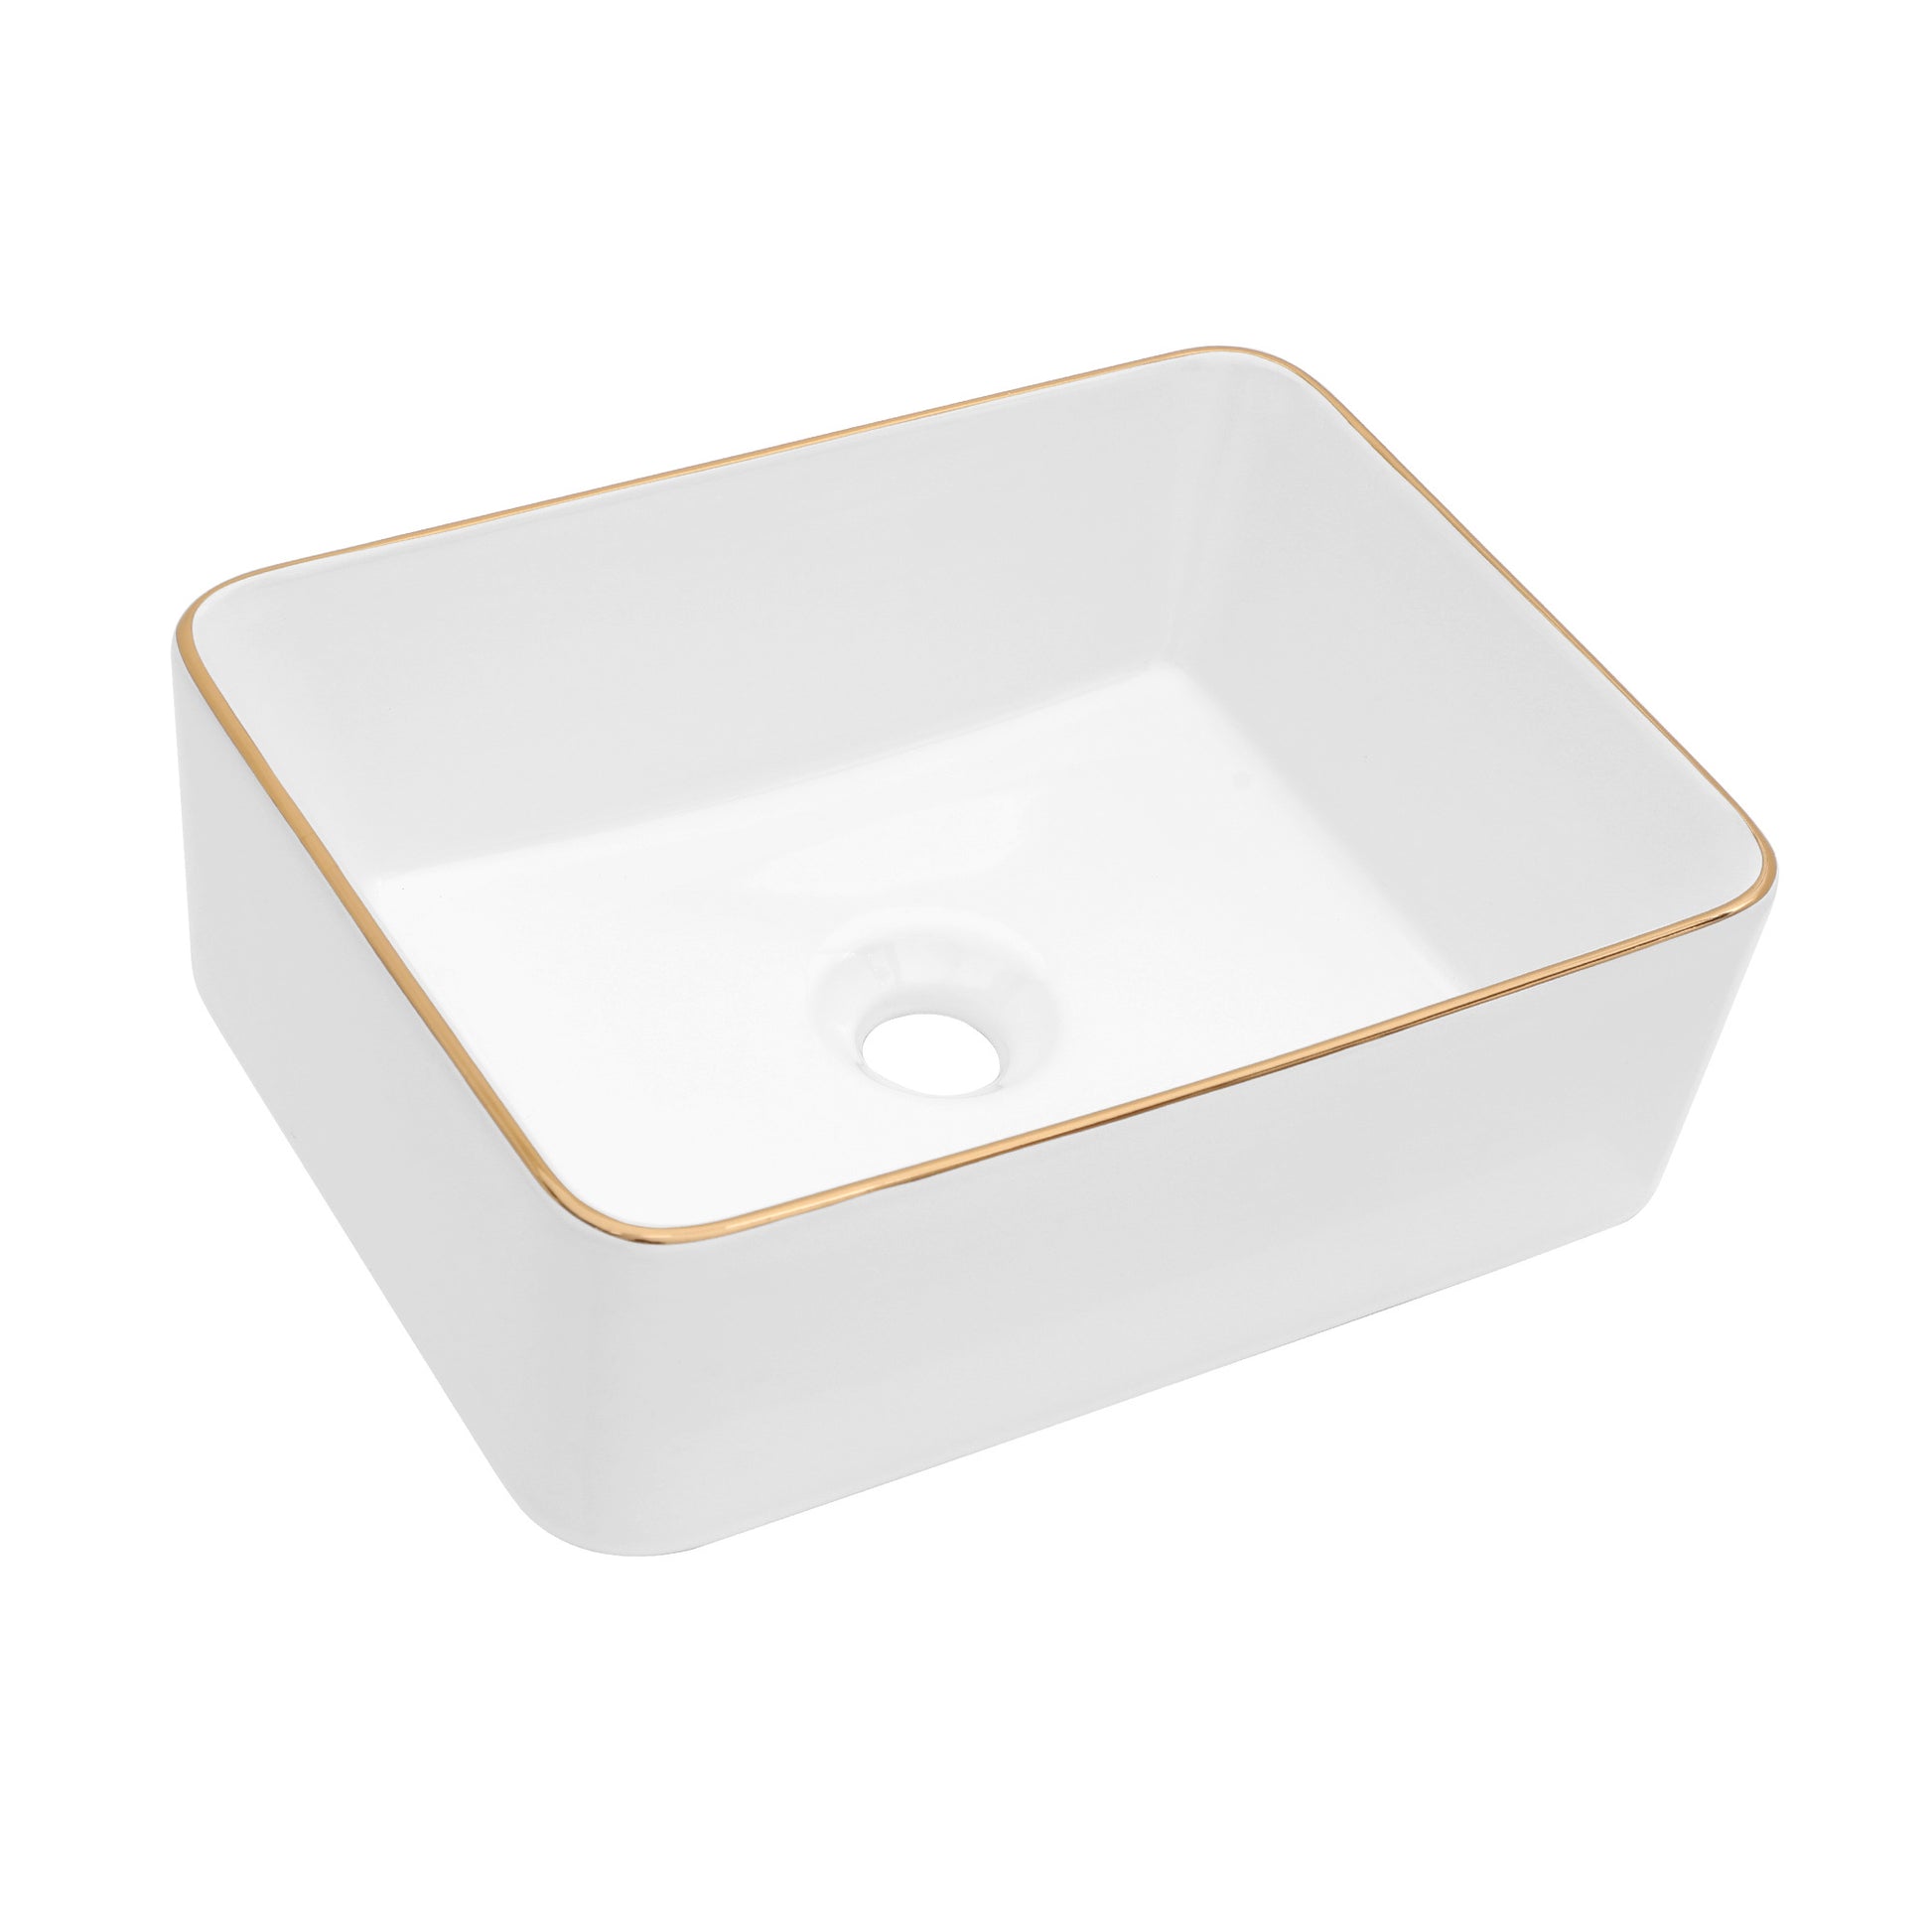 19x15 Inch White Ceramic Rectangular Vessel Bathroom white-ceramic